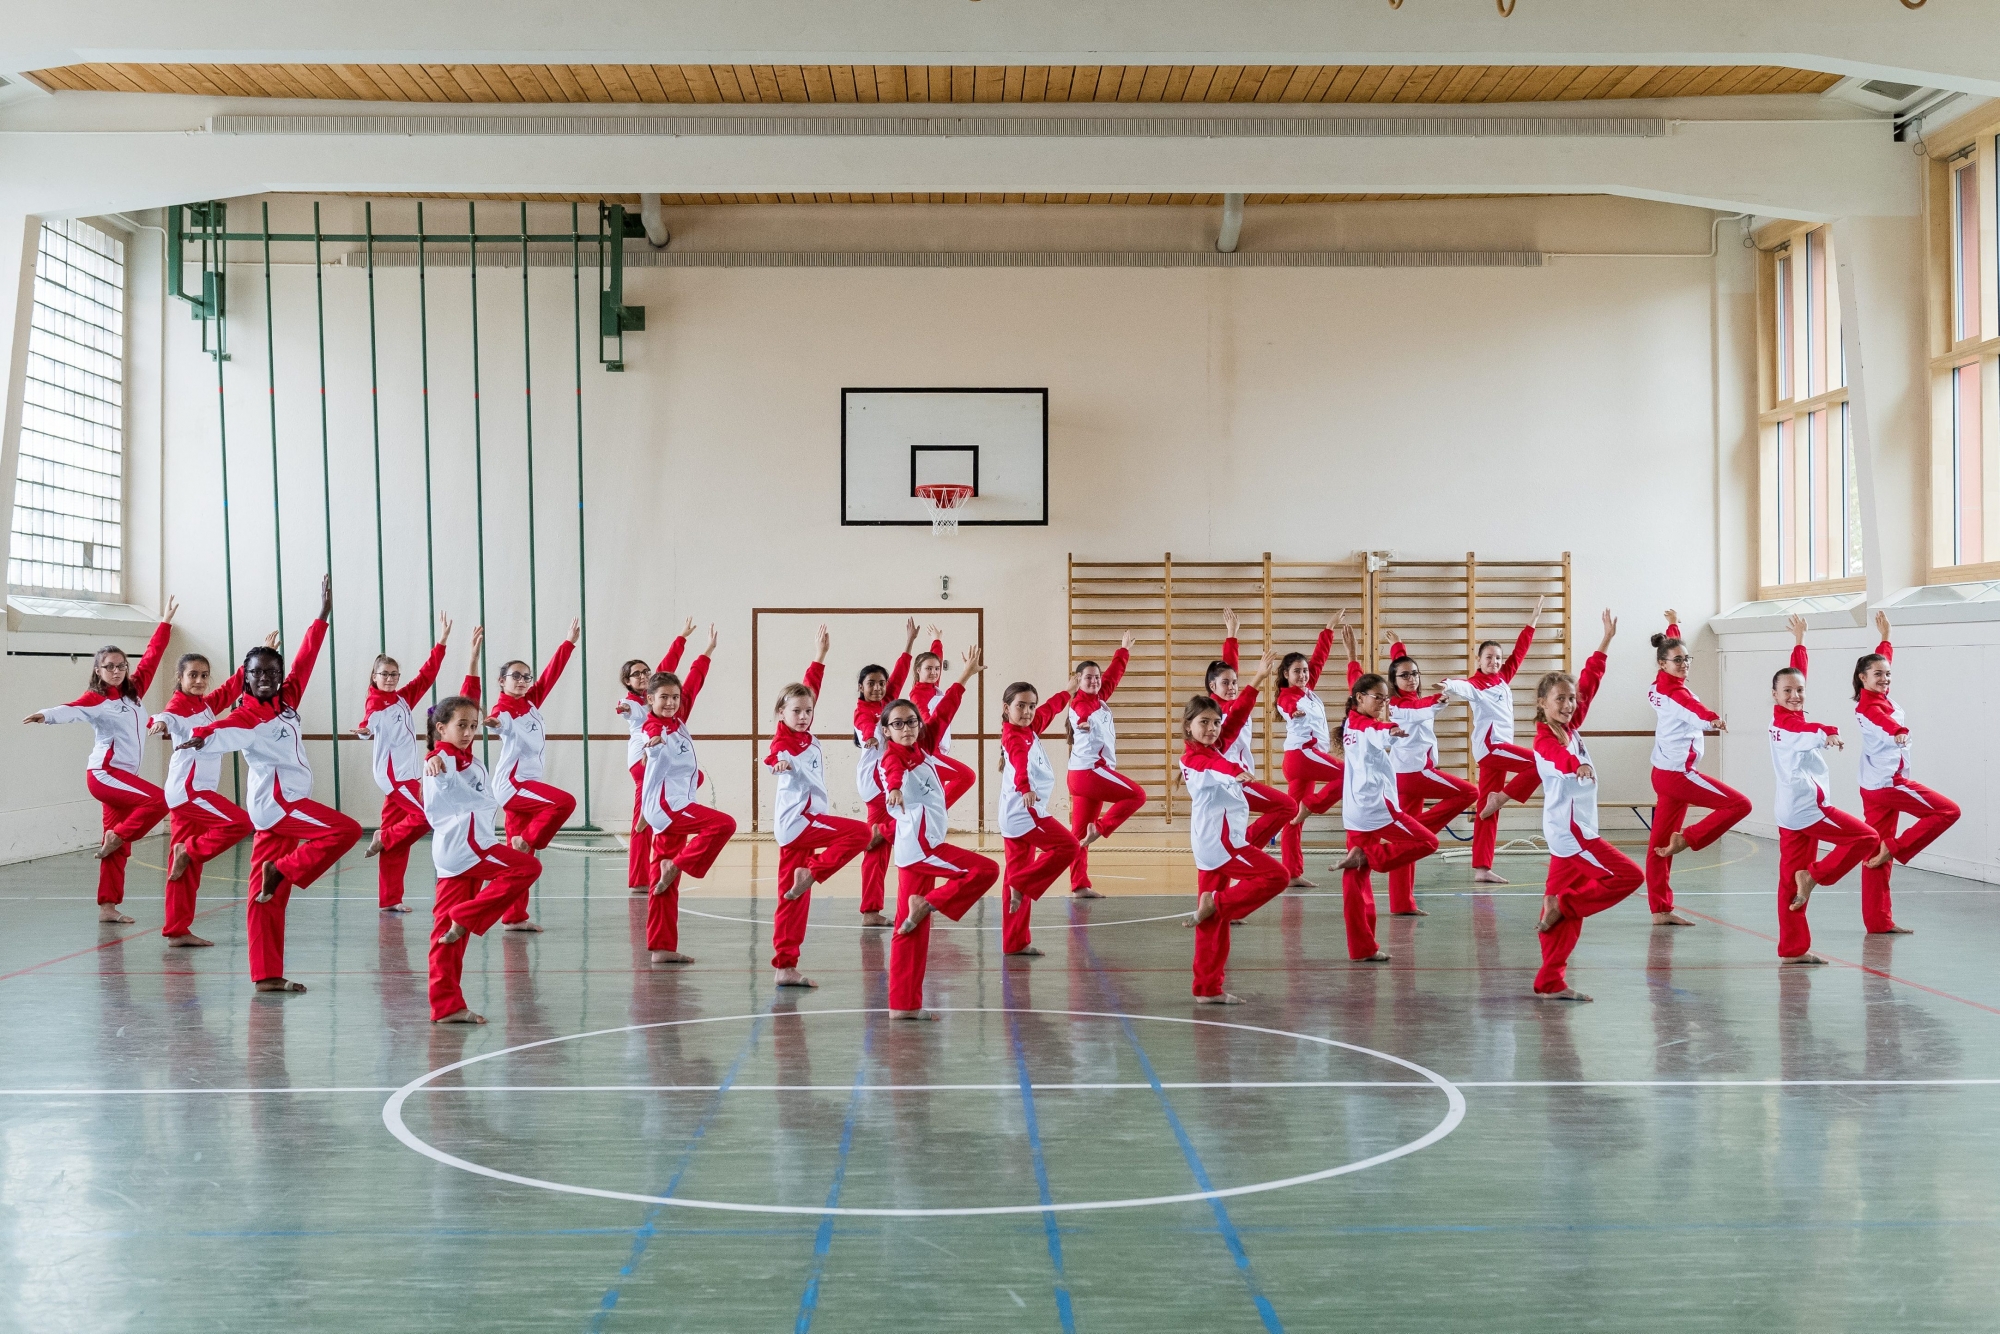 La troupe Sun Star Dance en repetition pour les futurs championnats du monde.

Le Locle, le 04 octobre 2017
Photo : Lucas Vuitel